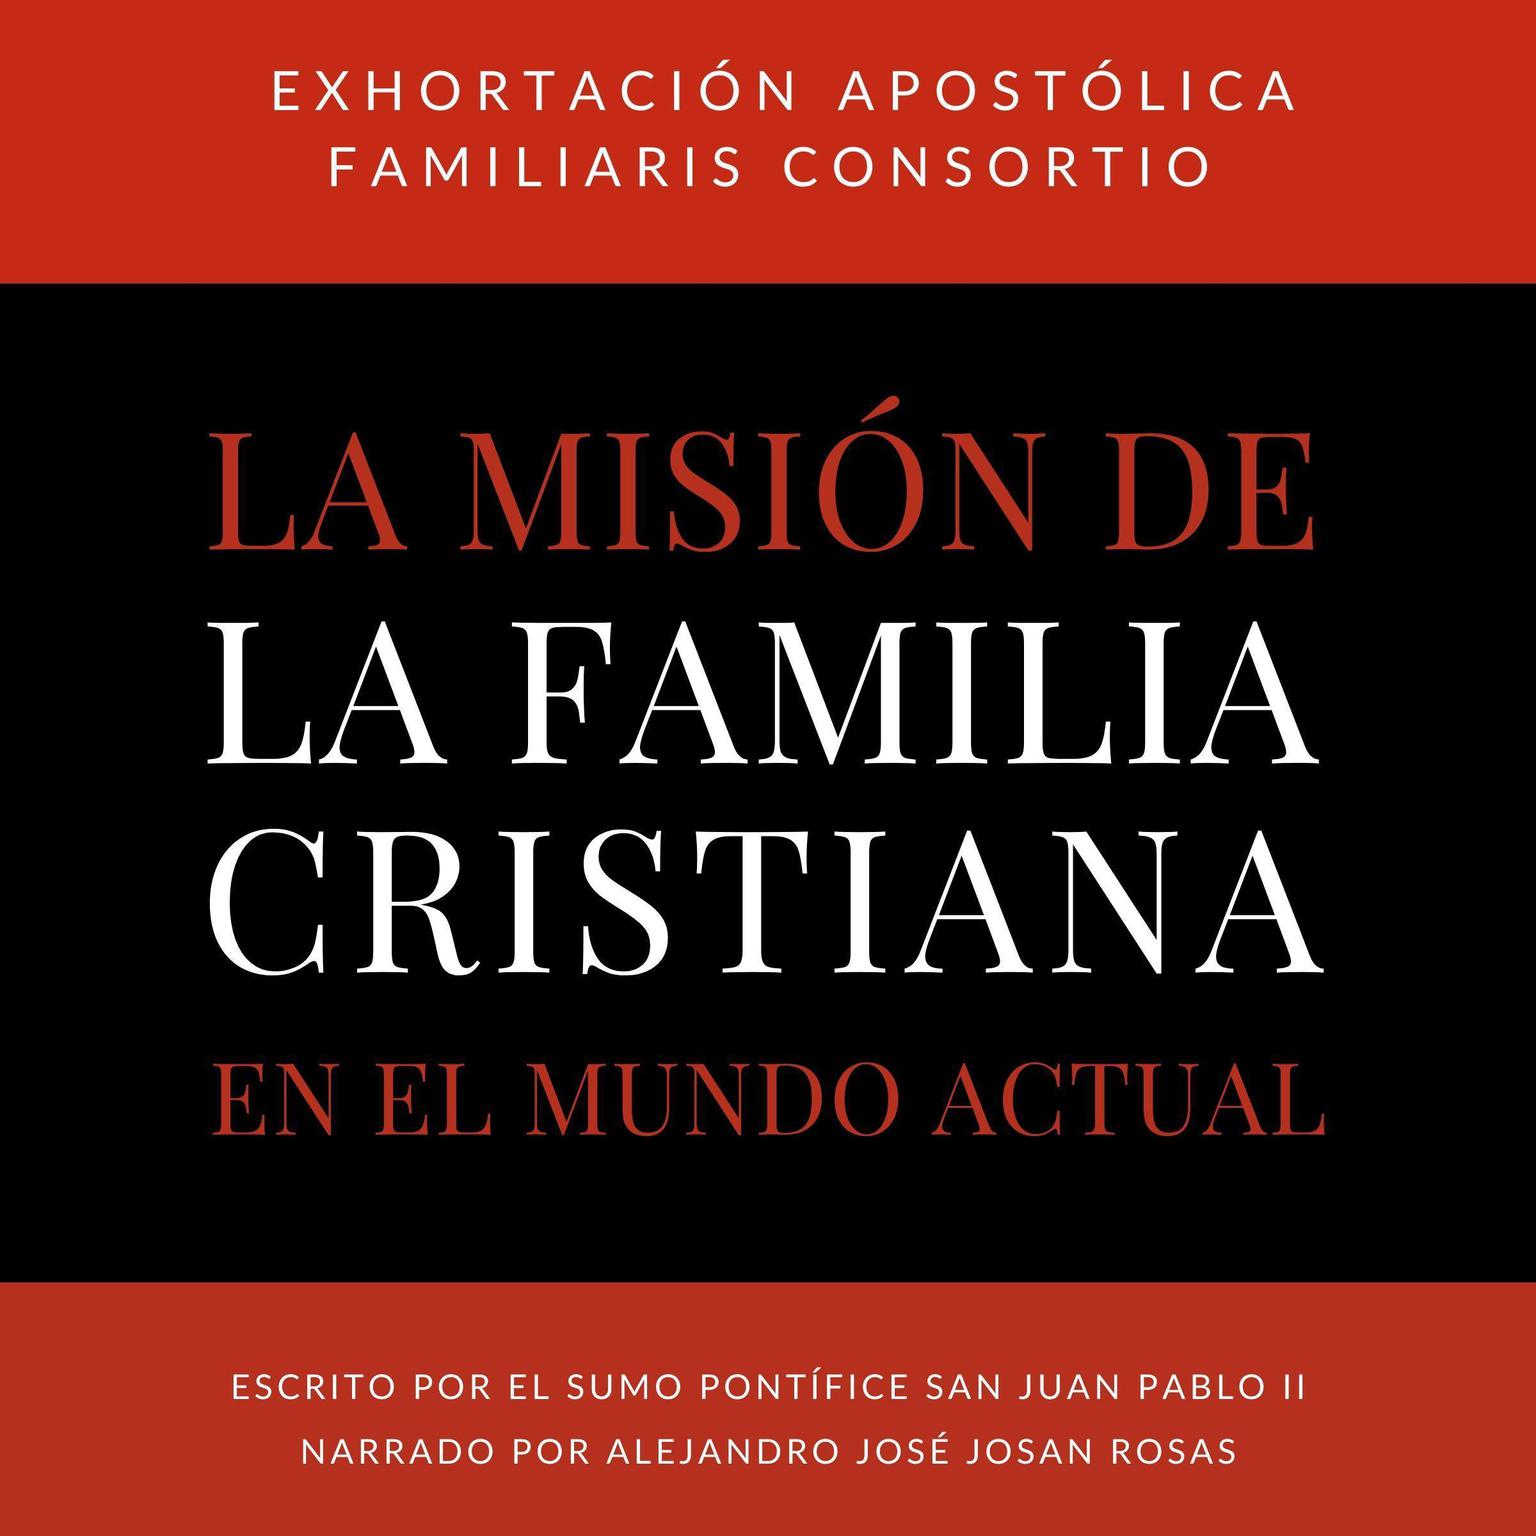 Exhortacion Apostolica Familiaris Consortio (Abridged): Sobre La Mision De La Familia Cristiana En El Mundo Actual Audiobook, by Juan Pablo